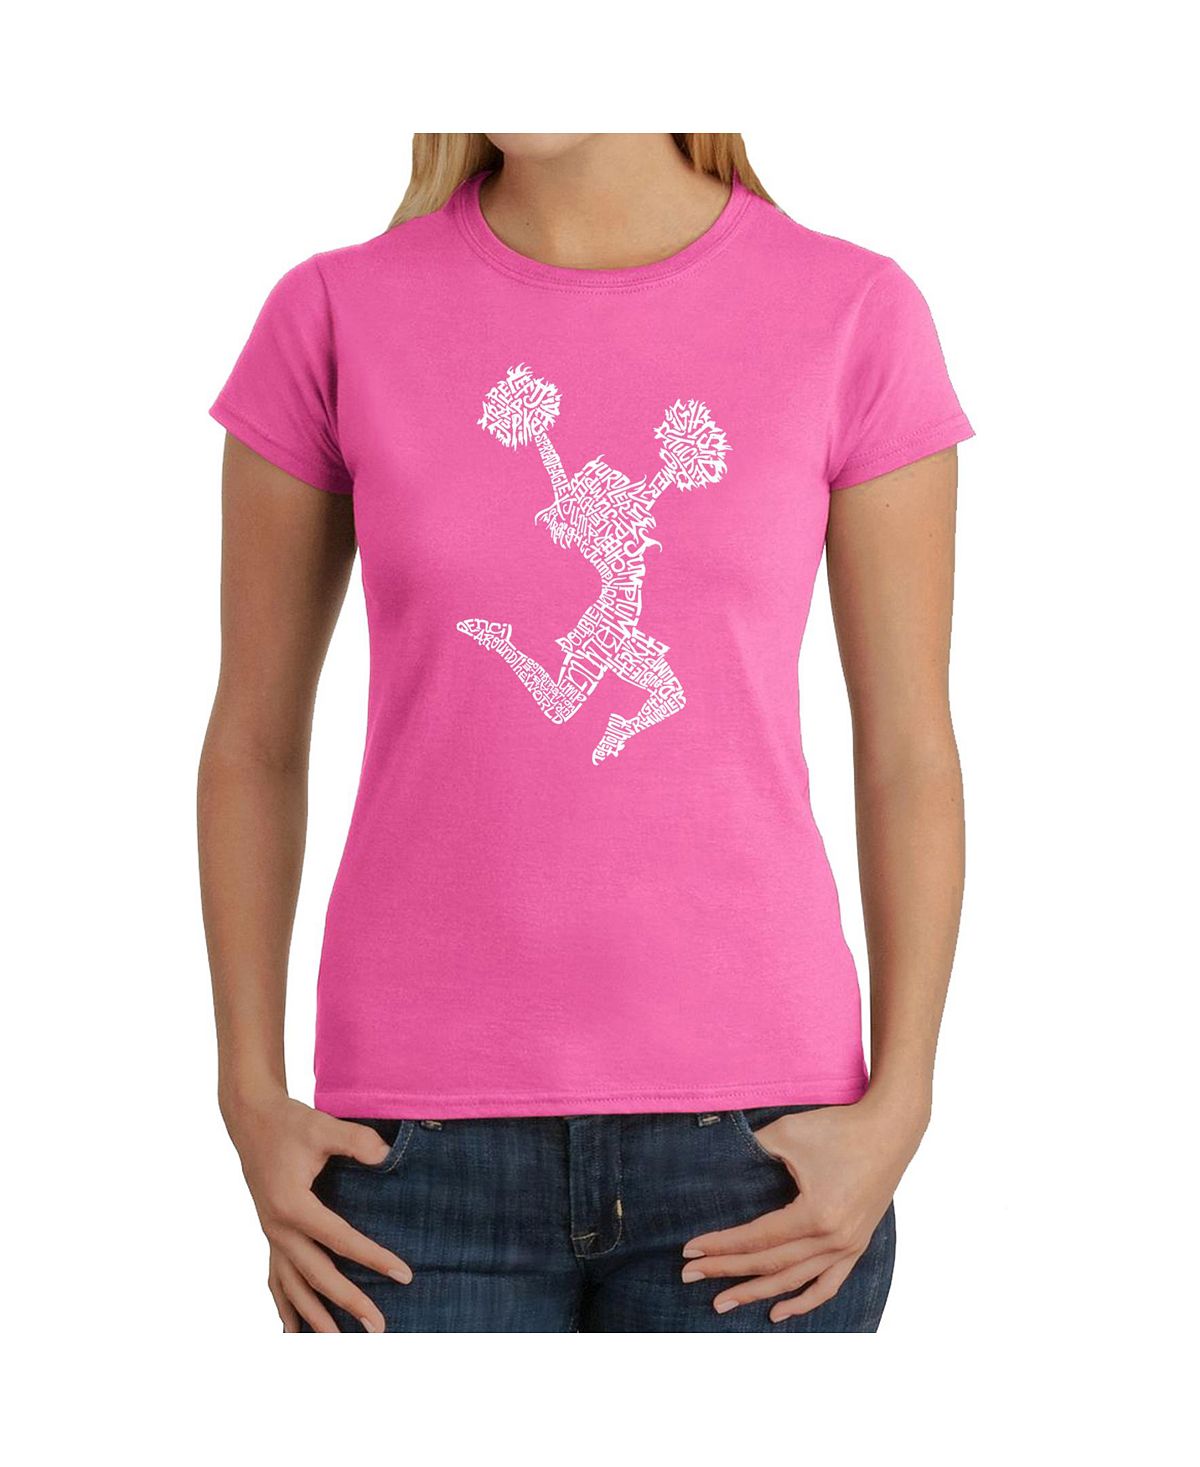 Женская футболка word art - развеселить LA Pop Art, розовый фото